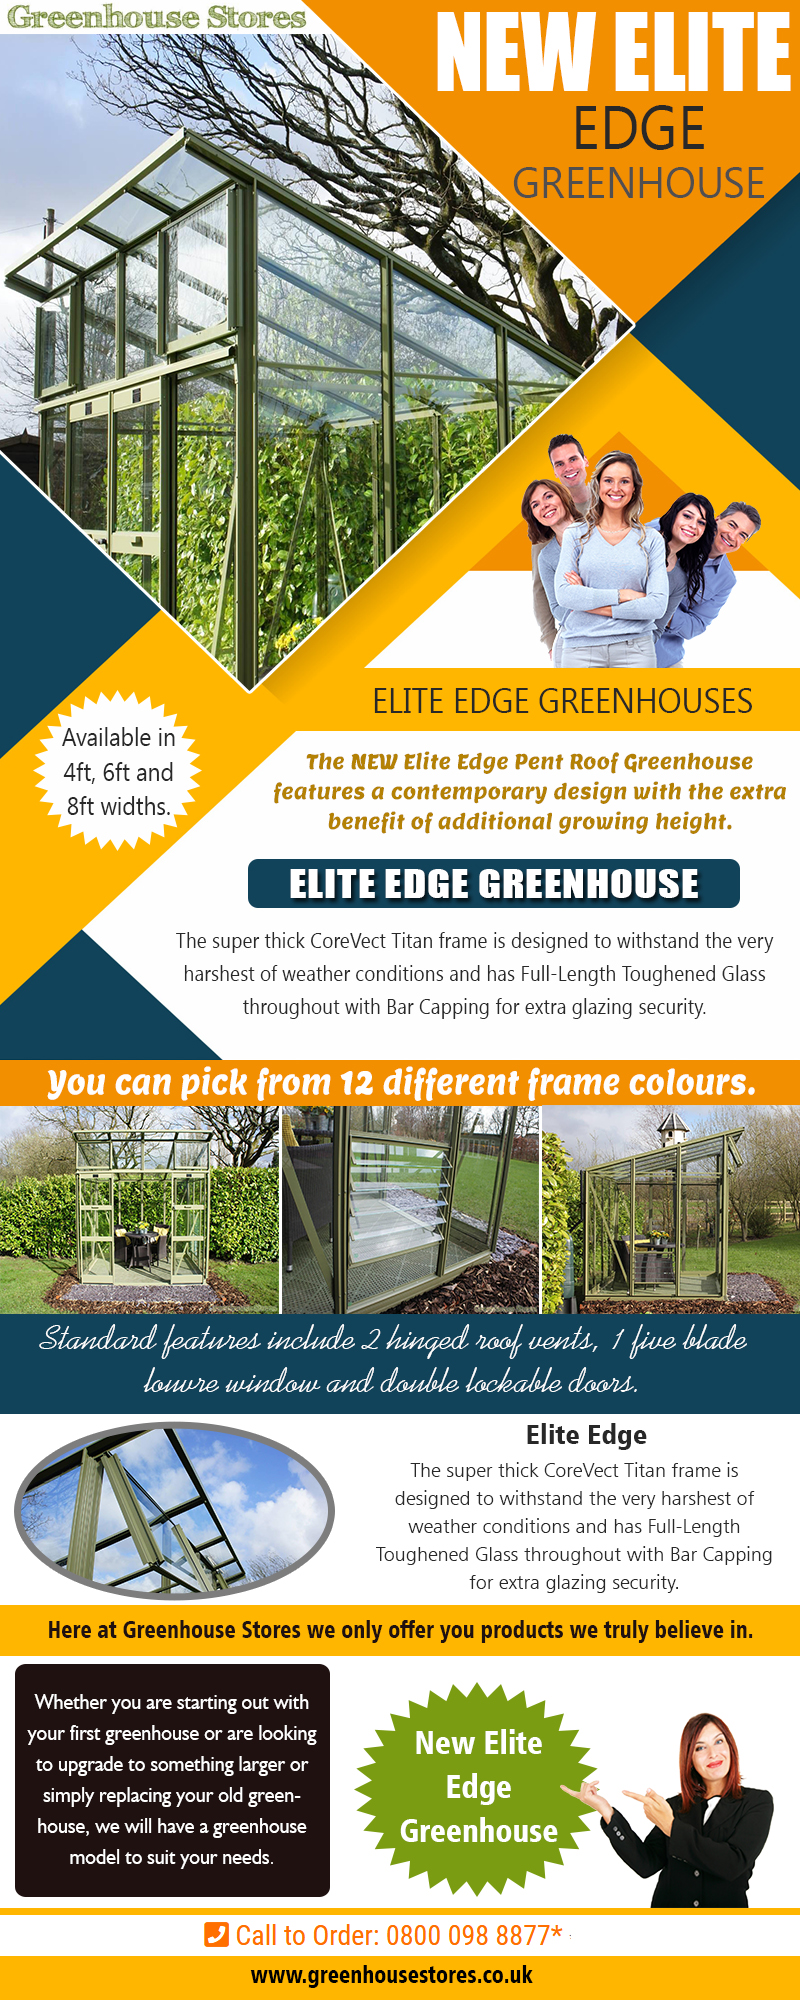 New Elite Edge Greenhouse